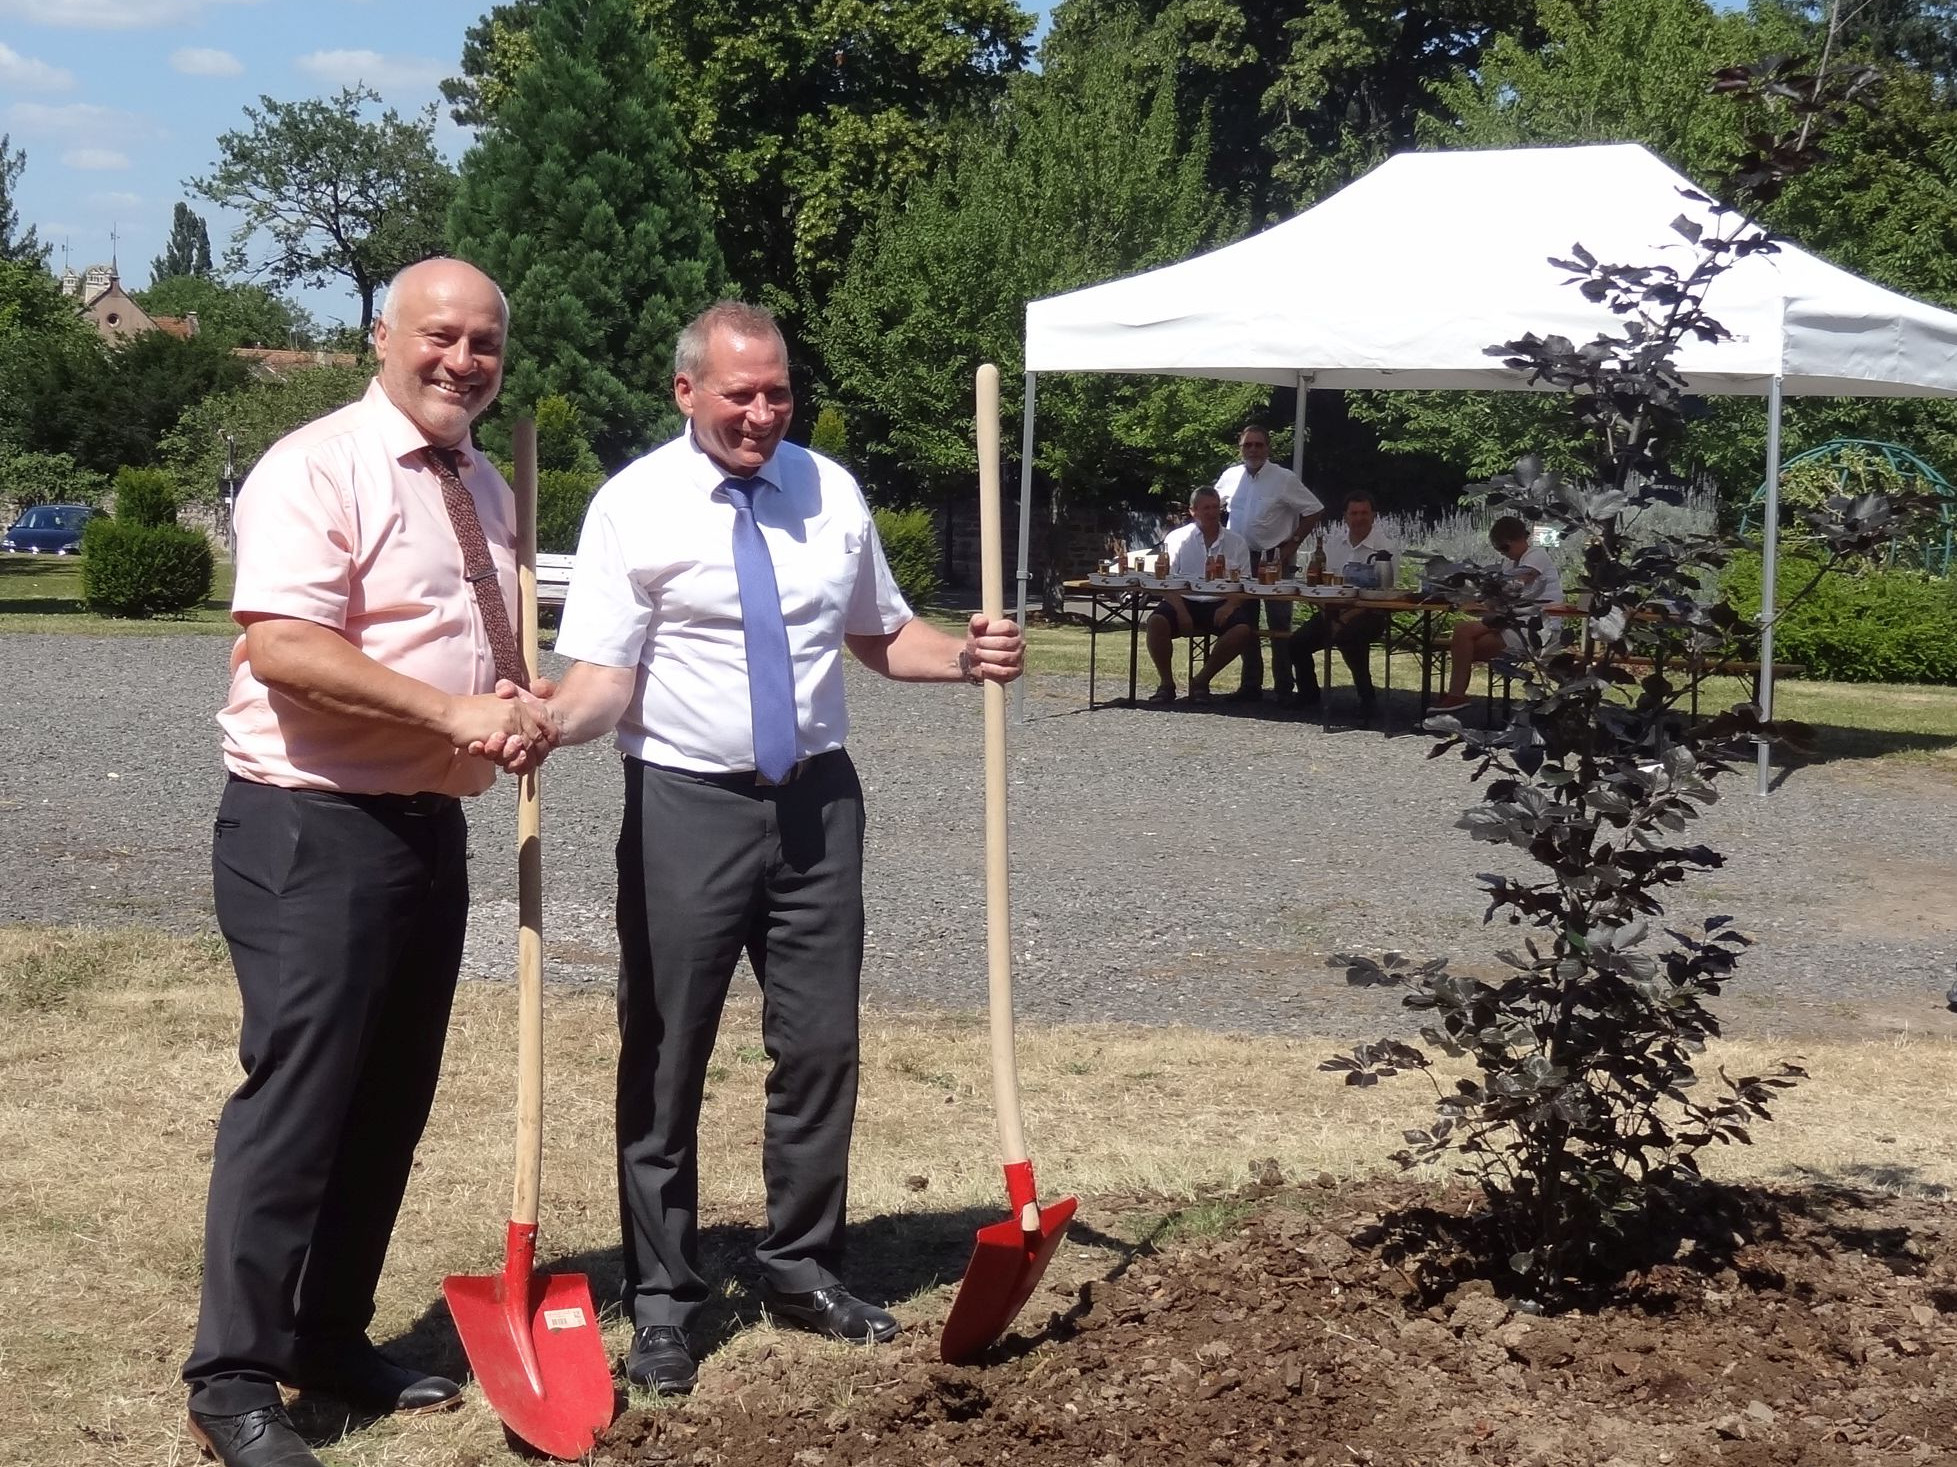                                                     Zum Zeichen der Freundschaft wurde durch die beiden Bürgermeister Claude Deybach (rechts) und Reinhard Schmälzle ein Baum gepflanzt                                    